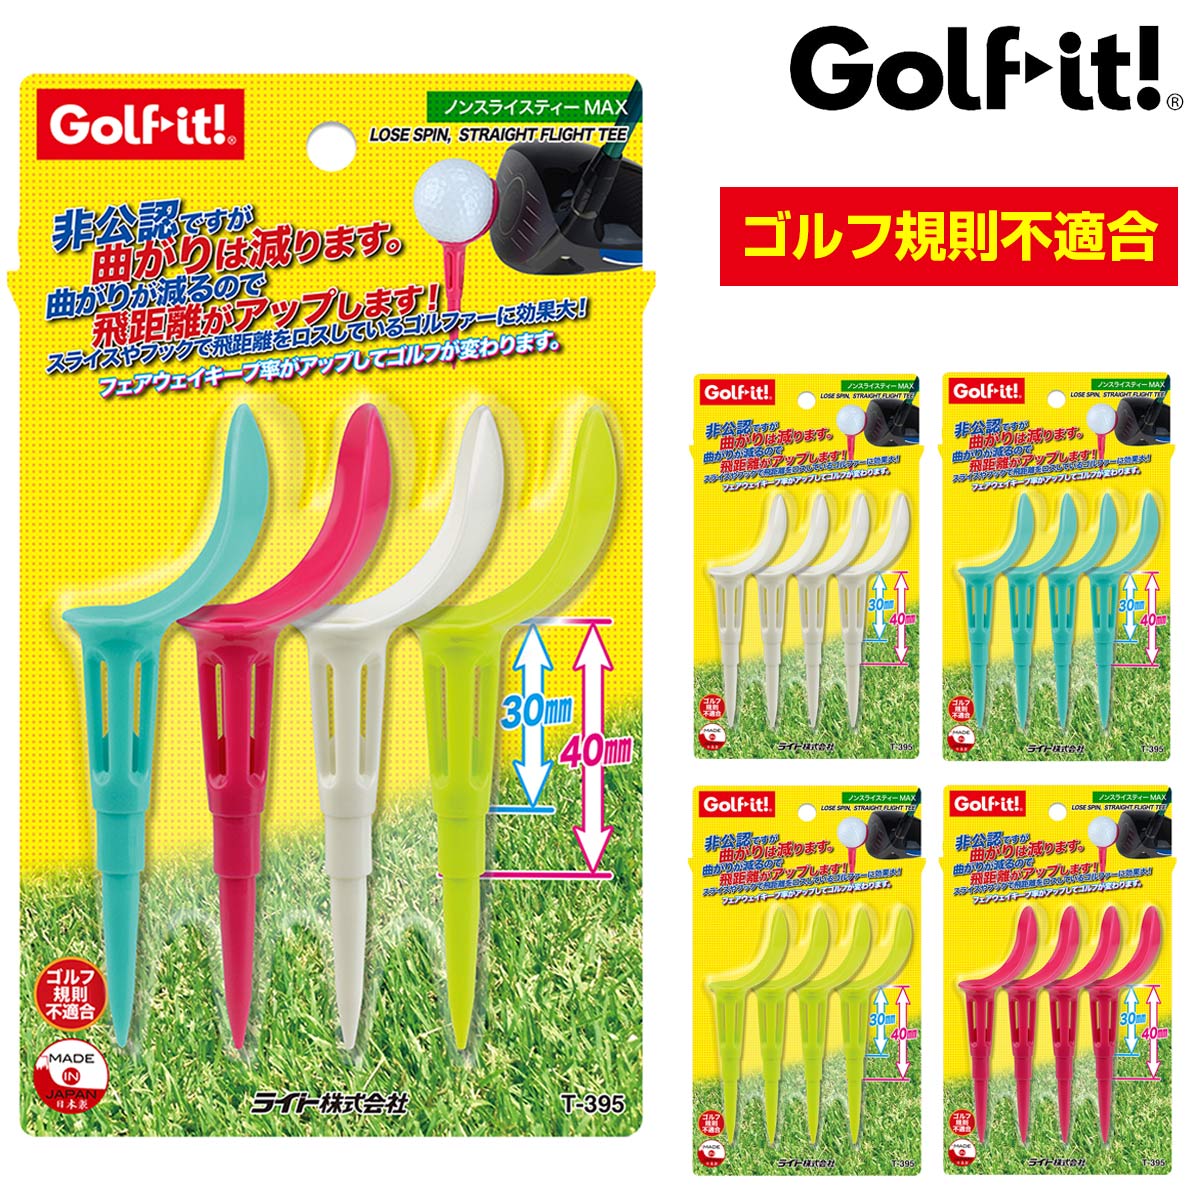 非公認ですが曲がりは減ります Golfit ゴルフイット 定番キャンバス LiTE ライト 日本正規品 ノンスライスティーMAX メーカー直売 T-395 あす楽対応 全長101mm 4本入